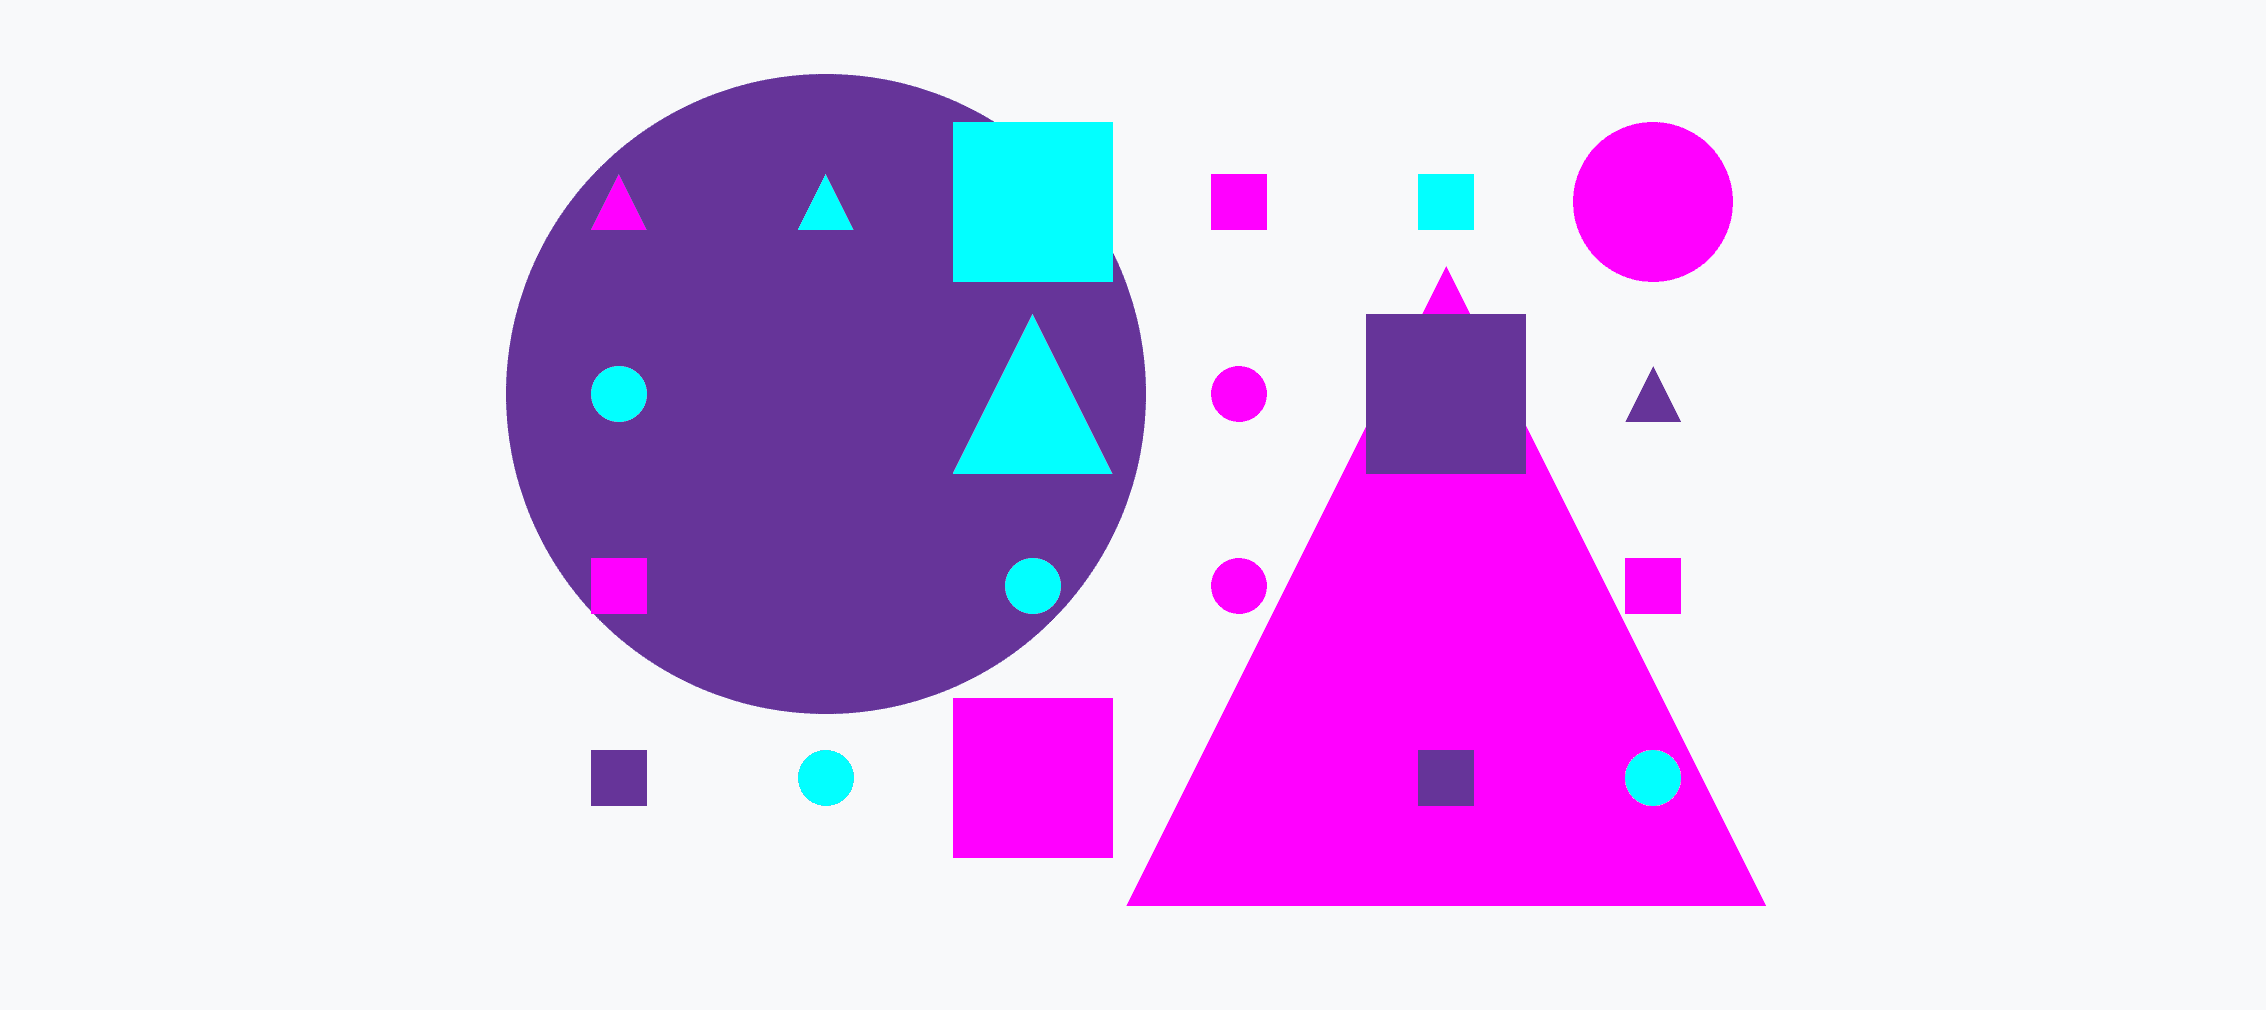 Una griglia colorata costituita da cerchi piccoli e grandi, triangoli e quadrati.